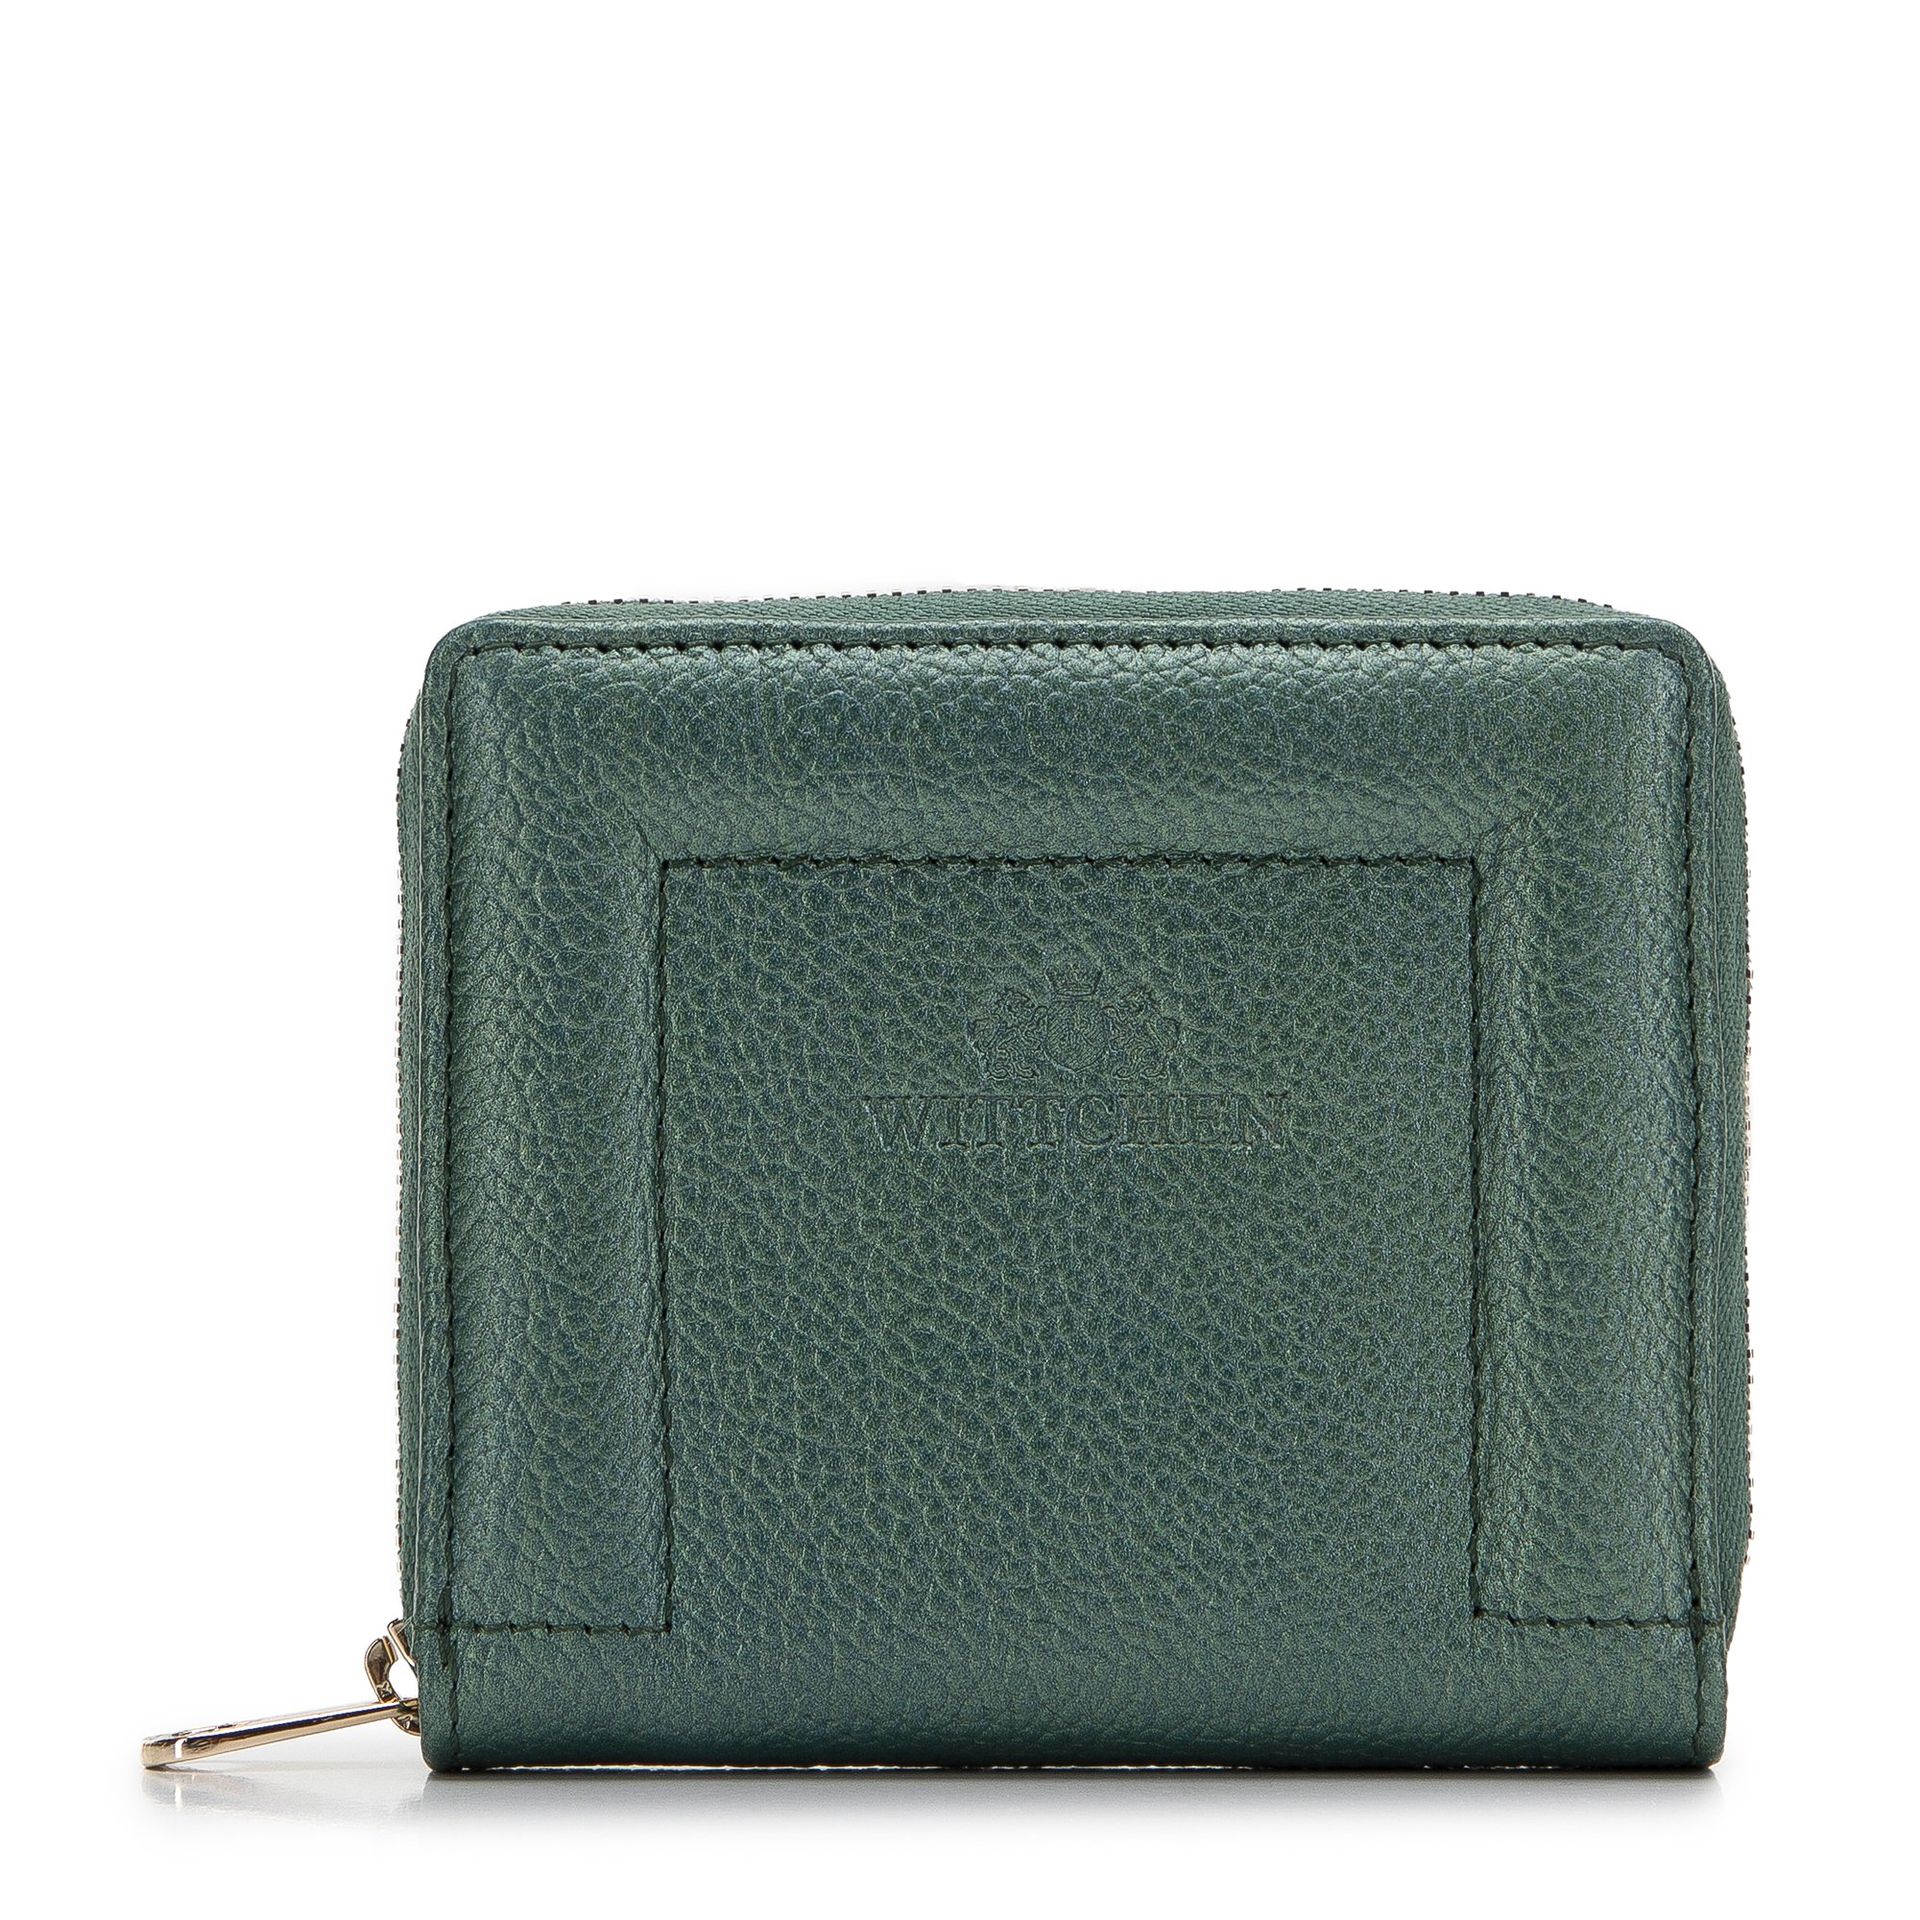 Damski portfel skórzany z ozdobnym brzegiem mały zielony